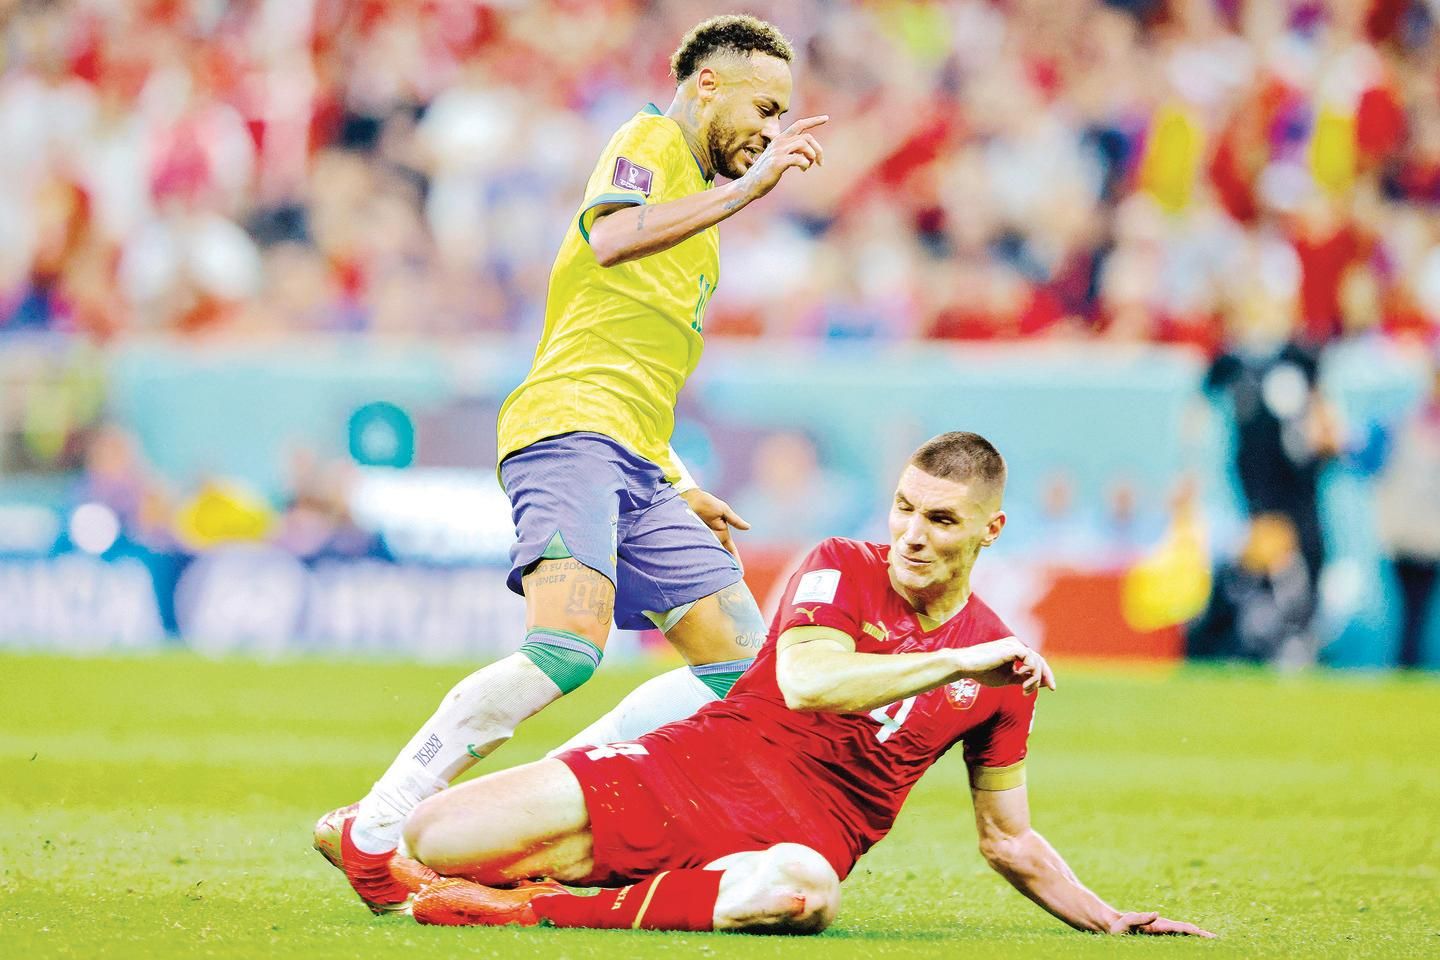 Ronaldo Fenômeno critica ironias sobre lesão de Neymar